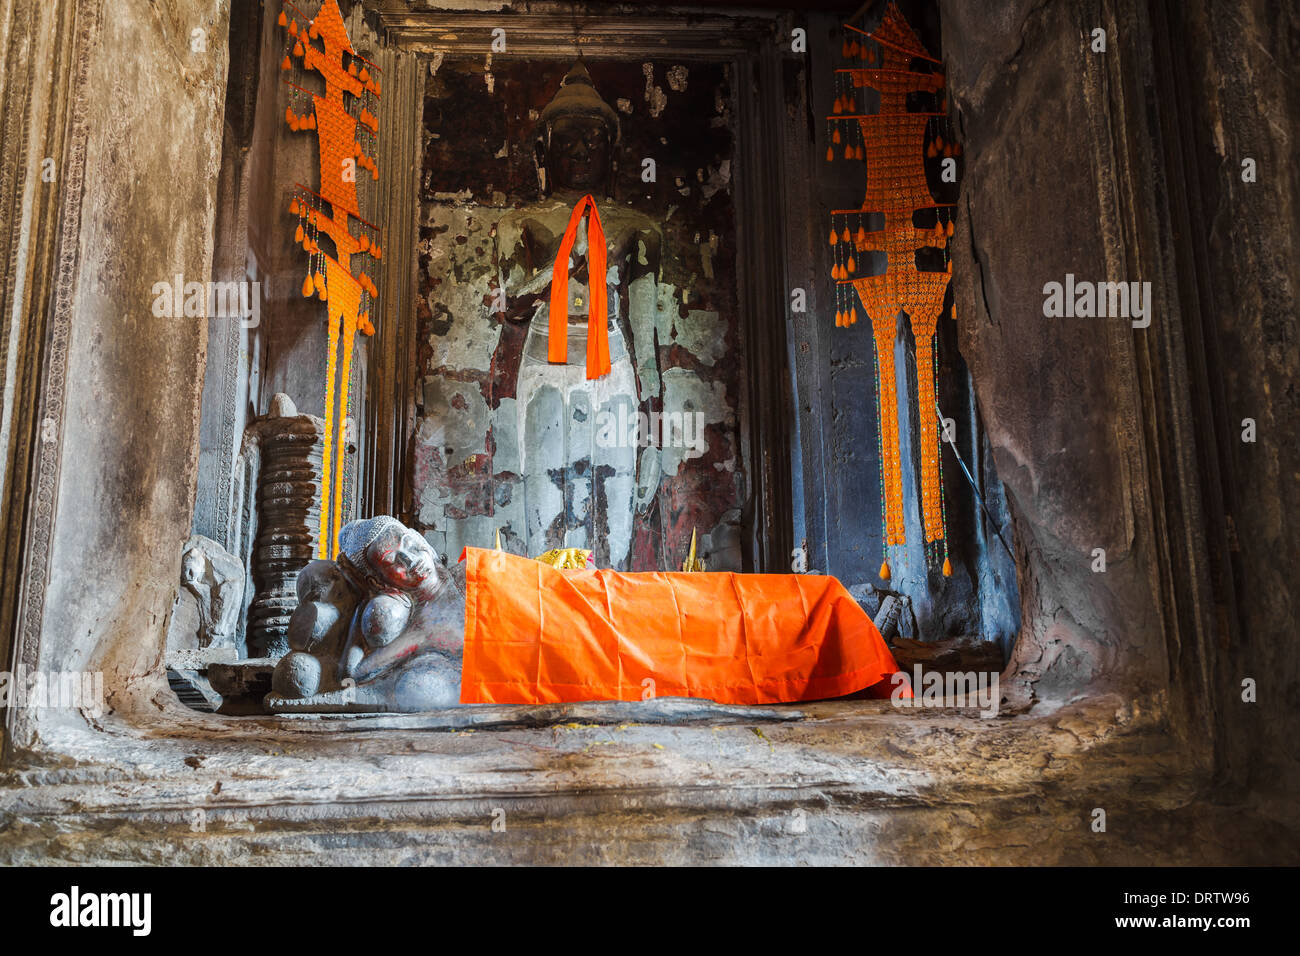 Imagen de Buda reclinado en Angkor Wat, Siem Reap, Camboya Foto de stock